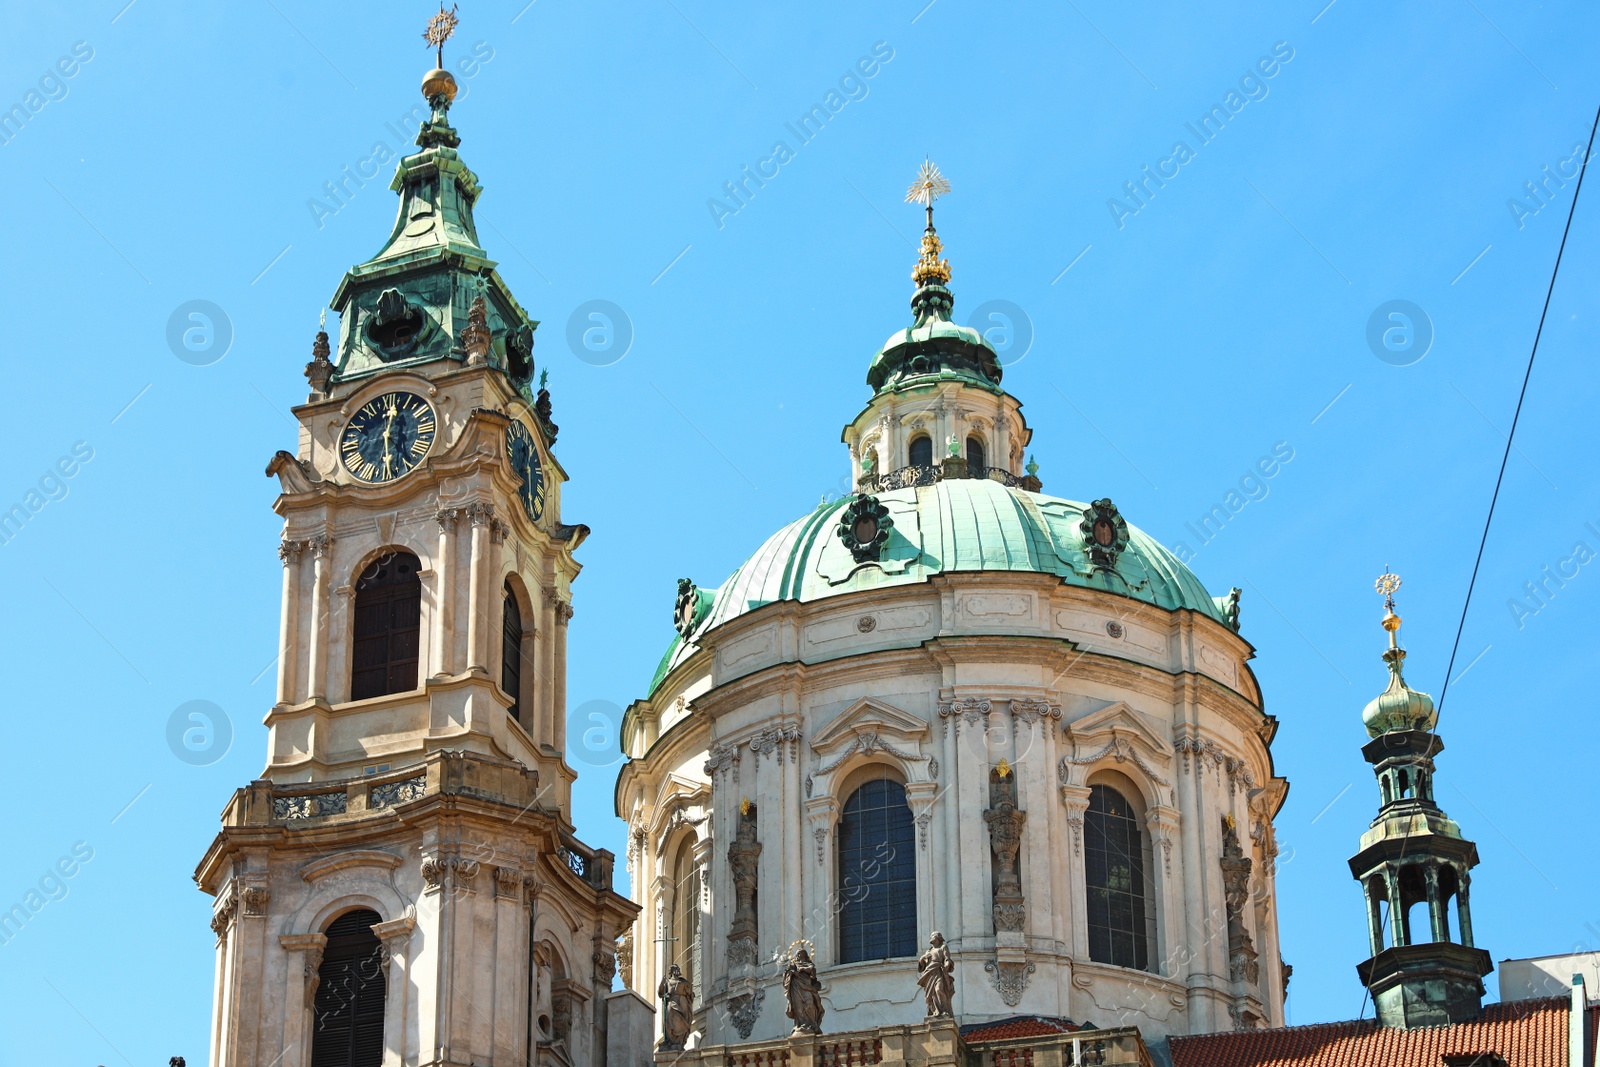 Photo of PRAGUE, CZECH REPUBLIC - APRIL 25, 2019: Saint Nicholas Church against blue sky